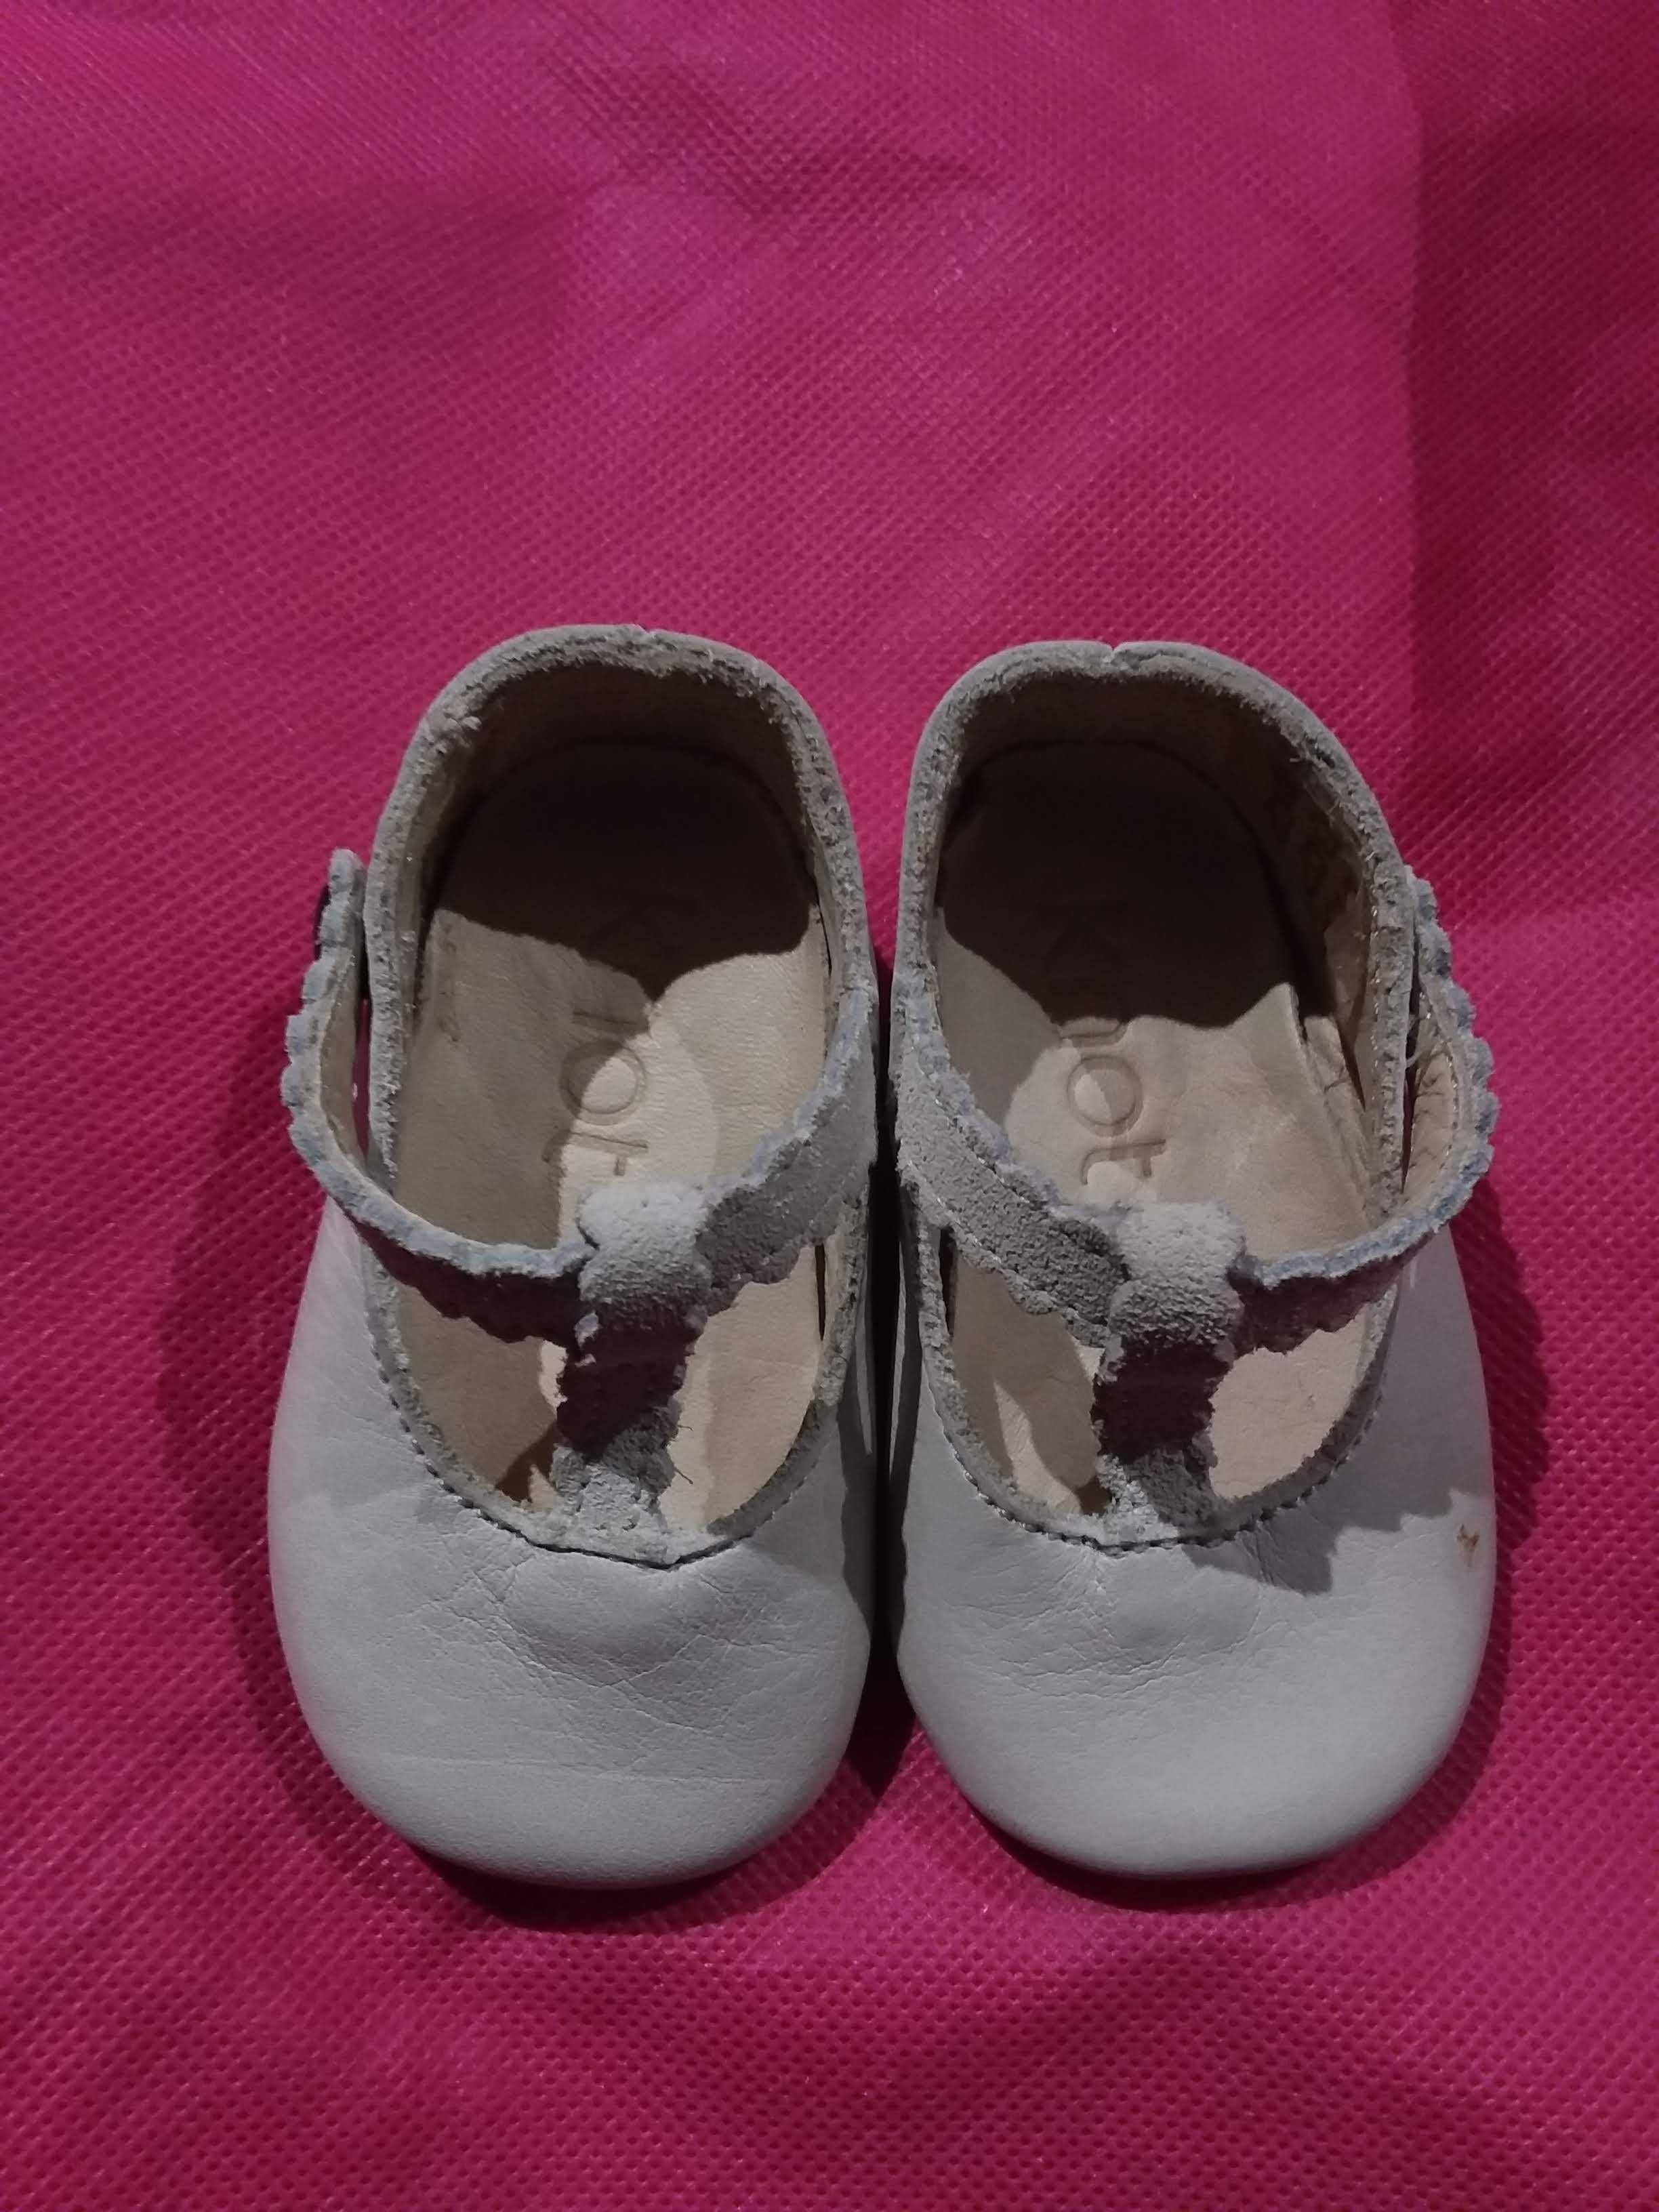 Sapato bebé, marca Knot, tamanho 15